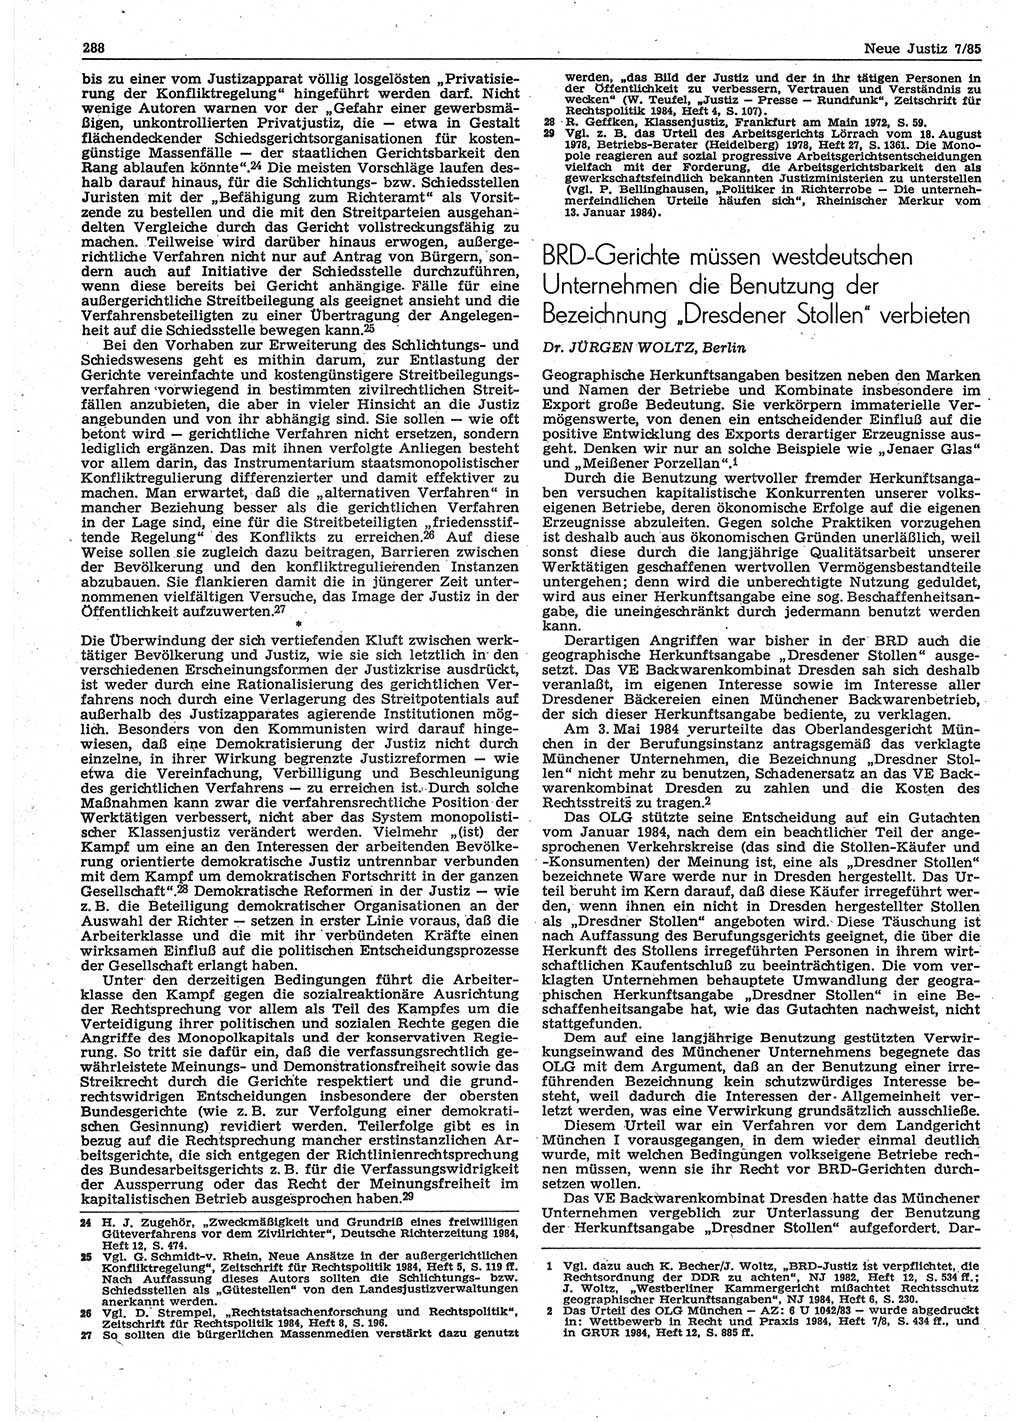 Neue Justiz (NJ), Zeitschrift für sozialistisches Recht und Gesetzlichkeit [Deutsche Demokratische Republik (DDR)], 39. Jahrgang 1985, Seite 288 (NJ DDR 1985, S. 288)